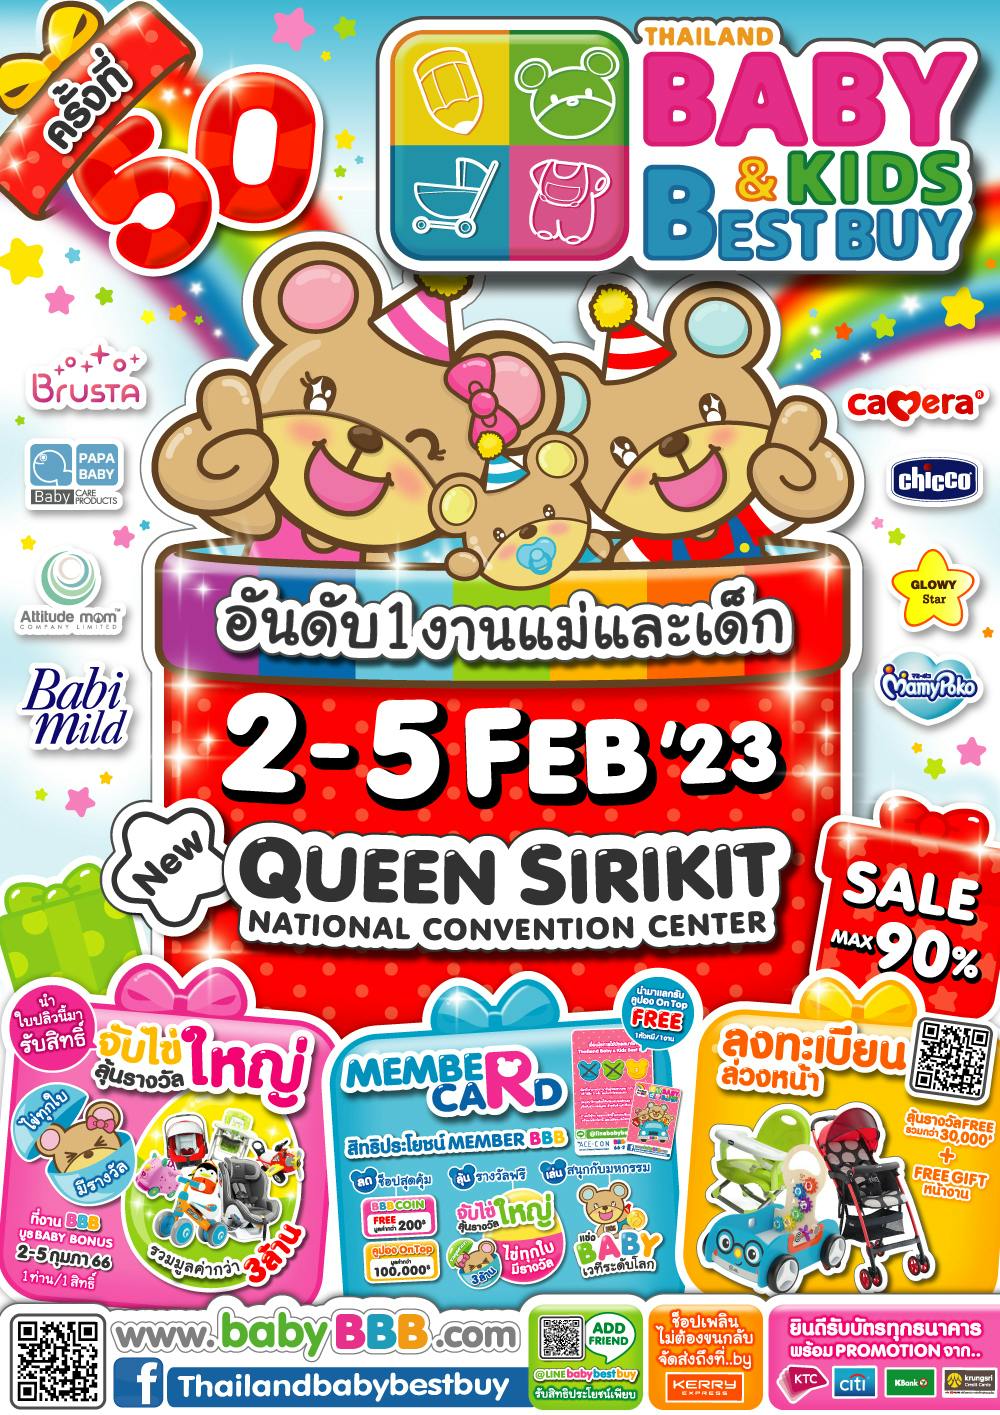 50th Thailand Baby & Kids Best Buy